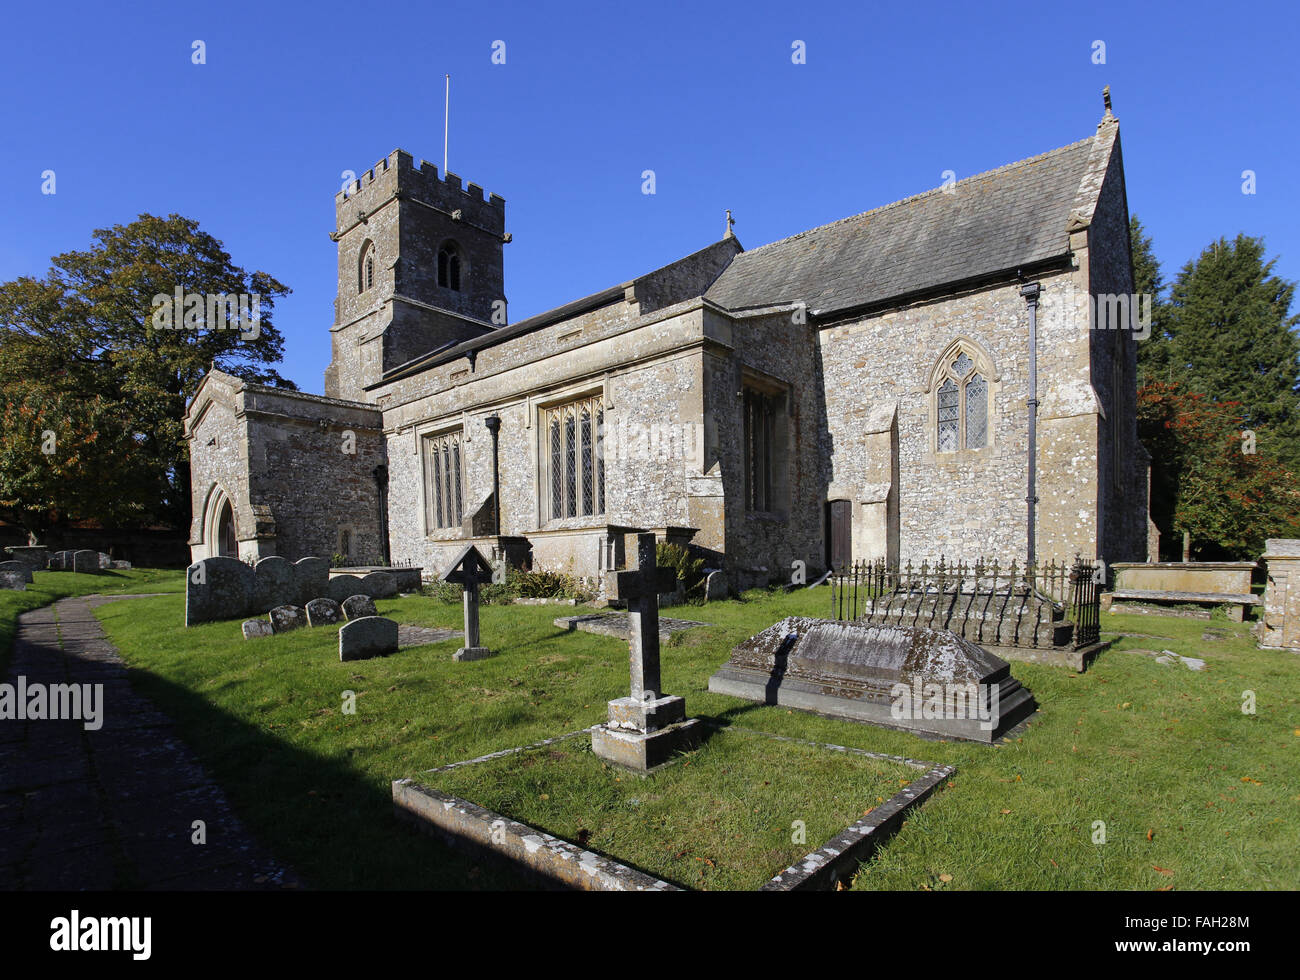 La Iglesia de San Jorge Ogbourne St George Wiltshire, Inglaterra Foto de stock